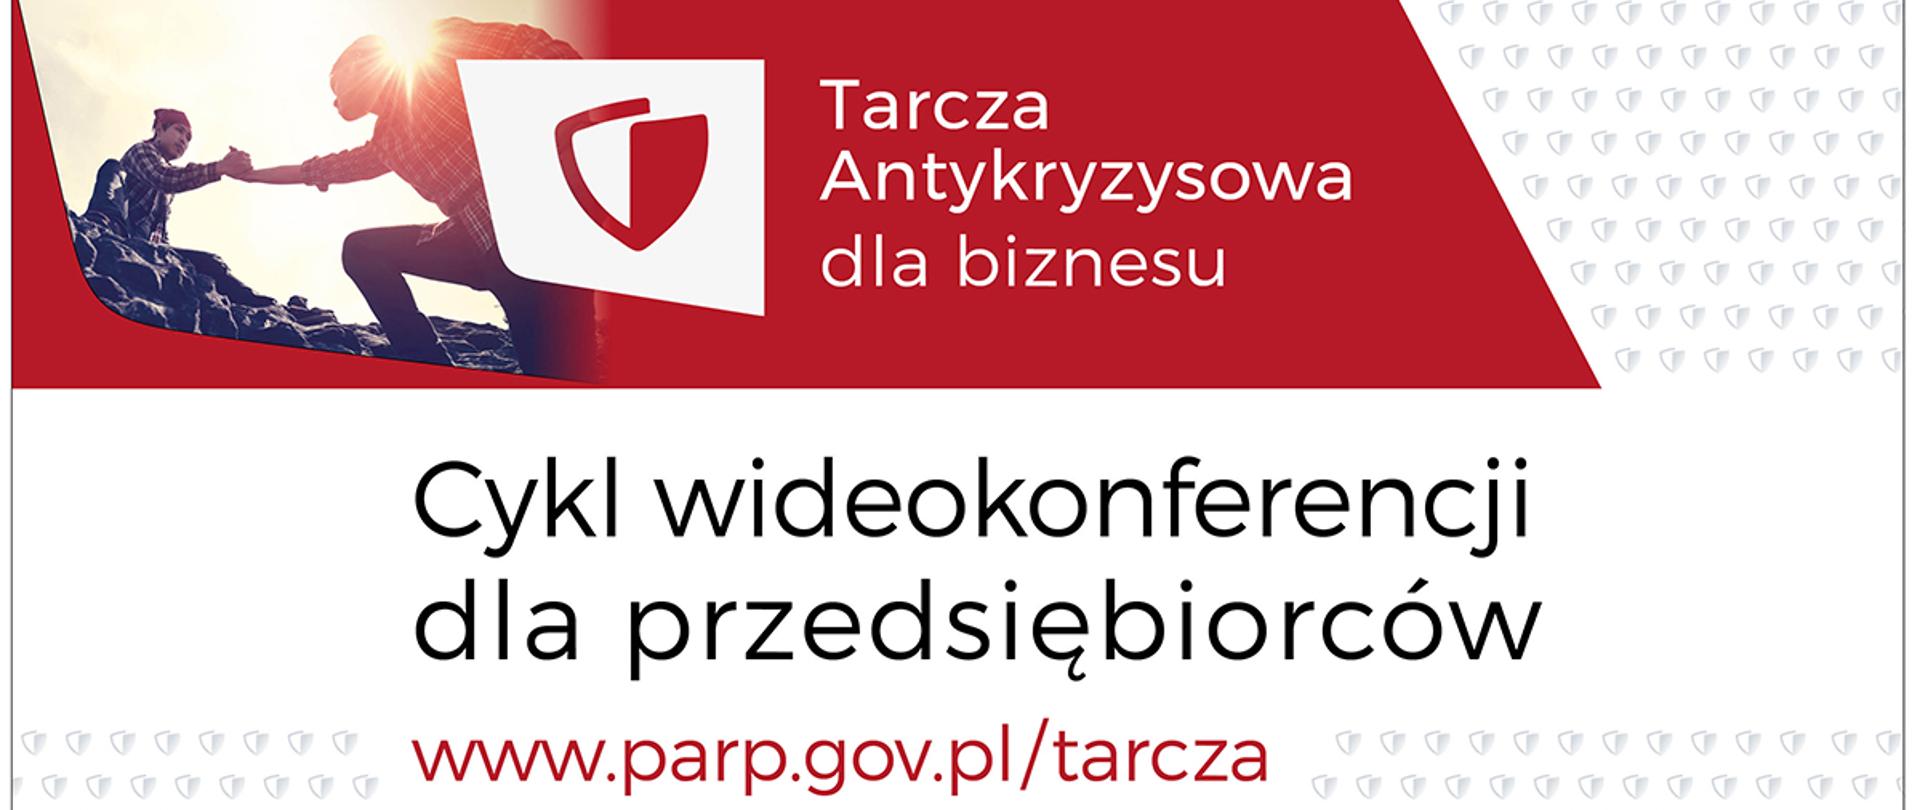 Na grafice od góry zdjęcie dwóch osób pomagających sobie we wspinaczce, logotyp i napis: Tarcza Antykryzysowa dla biznesu. Poniżej napis Cykl wideokonferencji dla przedsiębiorców www.parp.gov.pl/tarcza.